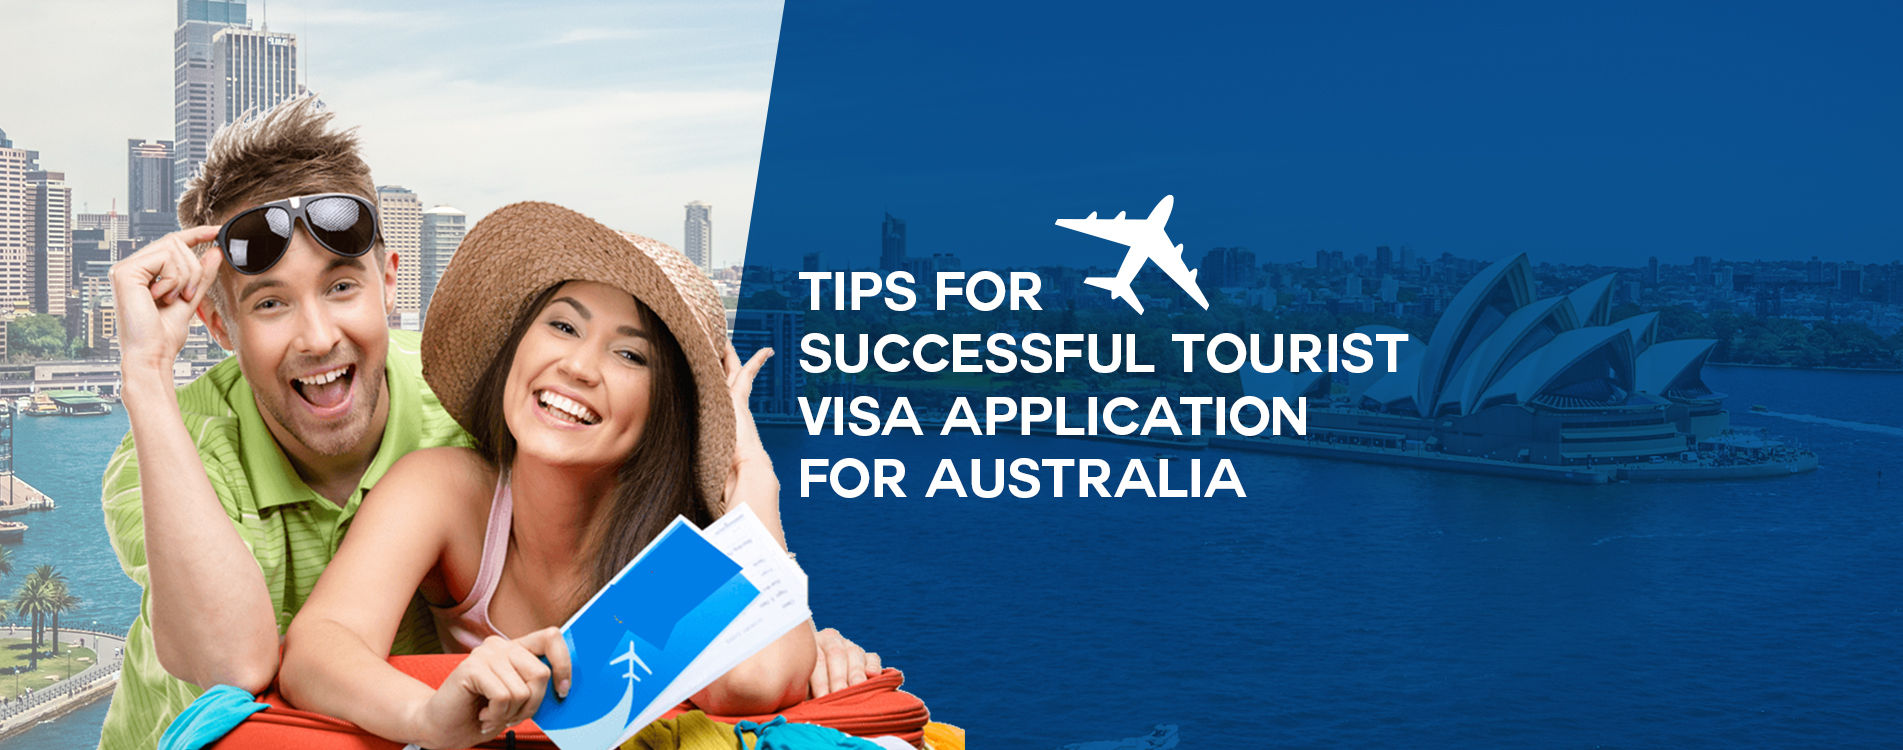 sponsored tourist visa to australia